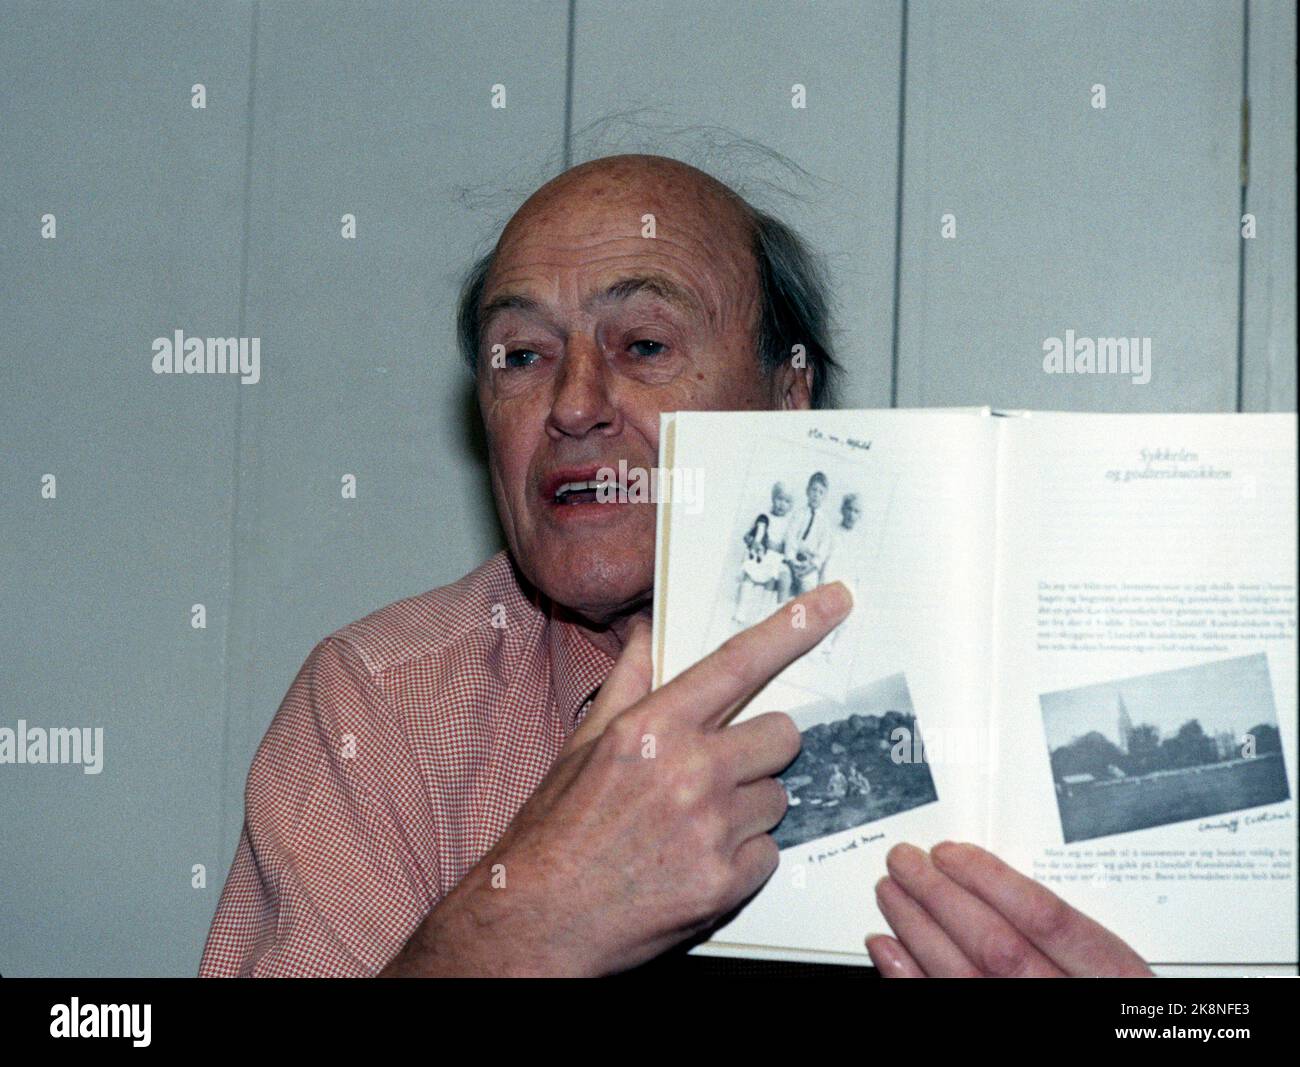 Oslo 19890929 der britische Autor Roald Dahl präsentiert sein Buch Matilda in norwegischer Übersetzung. Foto: Inge Gjellesvik / NTB / NTB Stockfoto